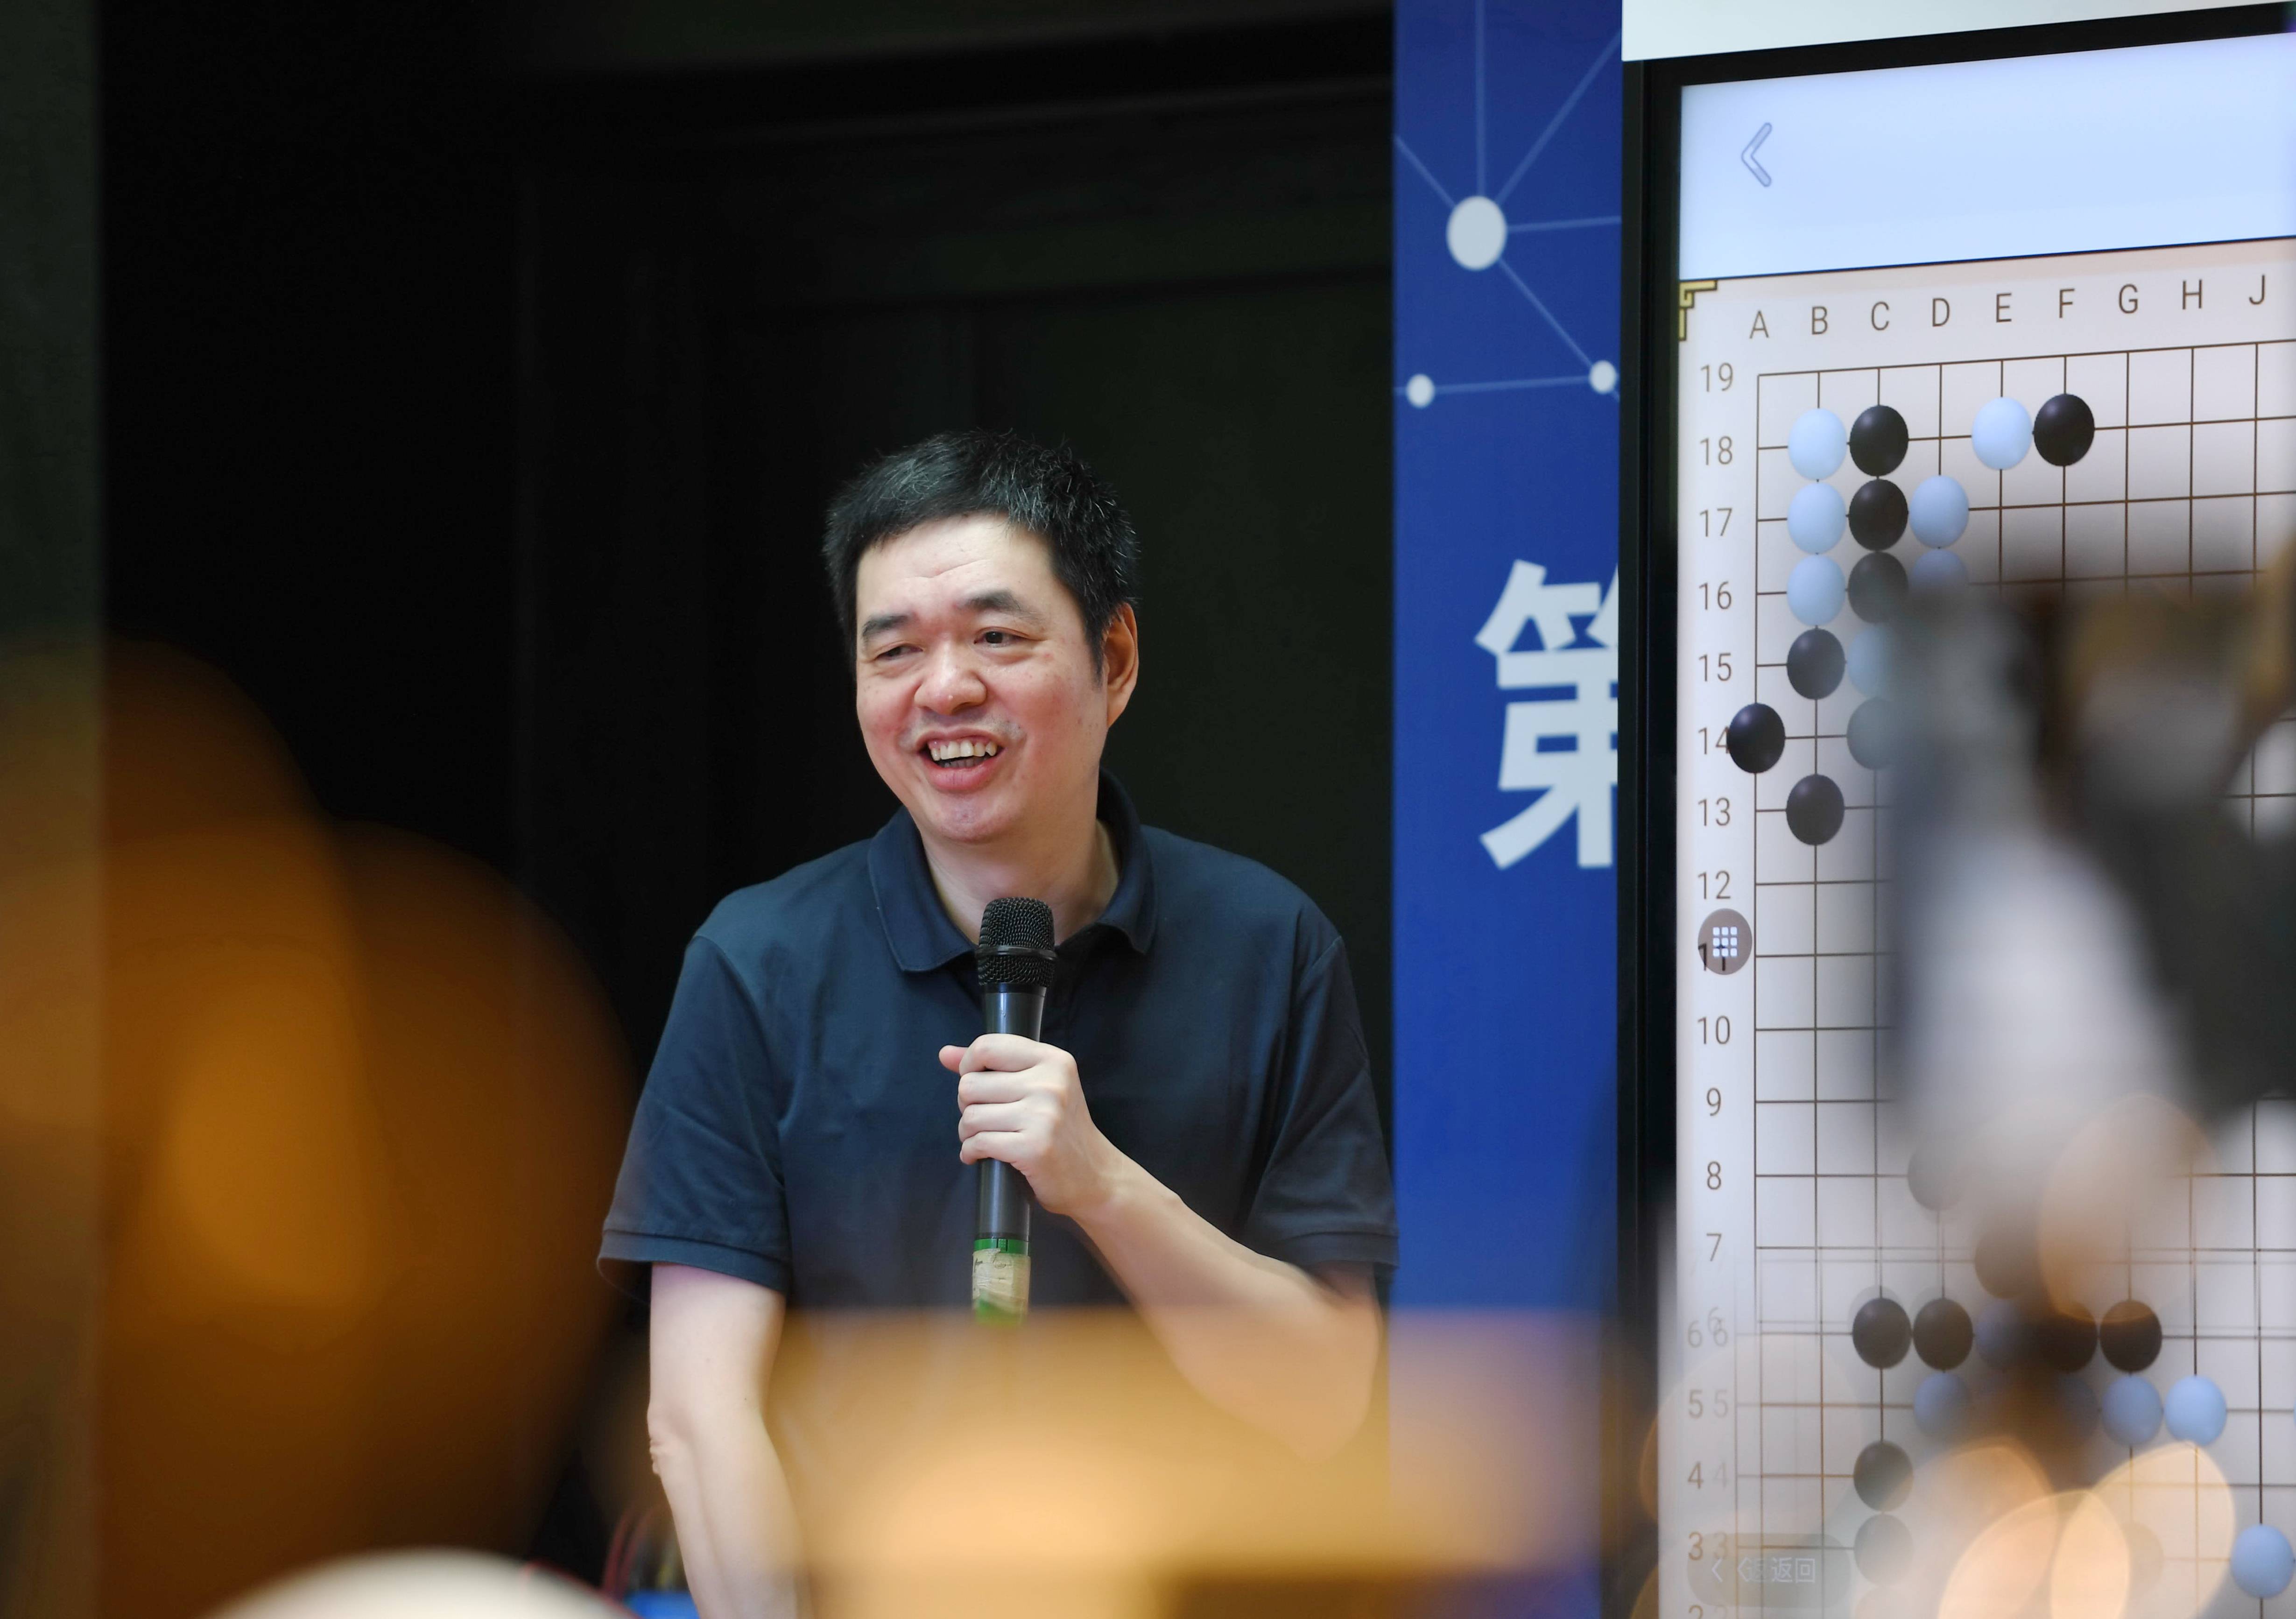 第三届福州市业余围棋联赛第一阶段比赛开战,前围棋世界冠军马晓春